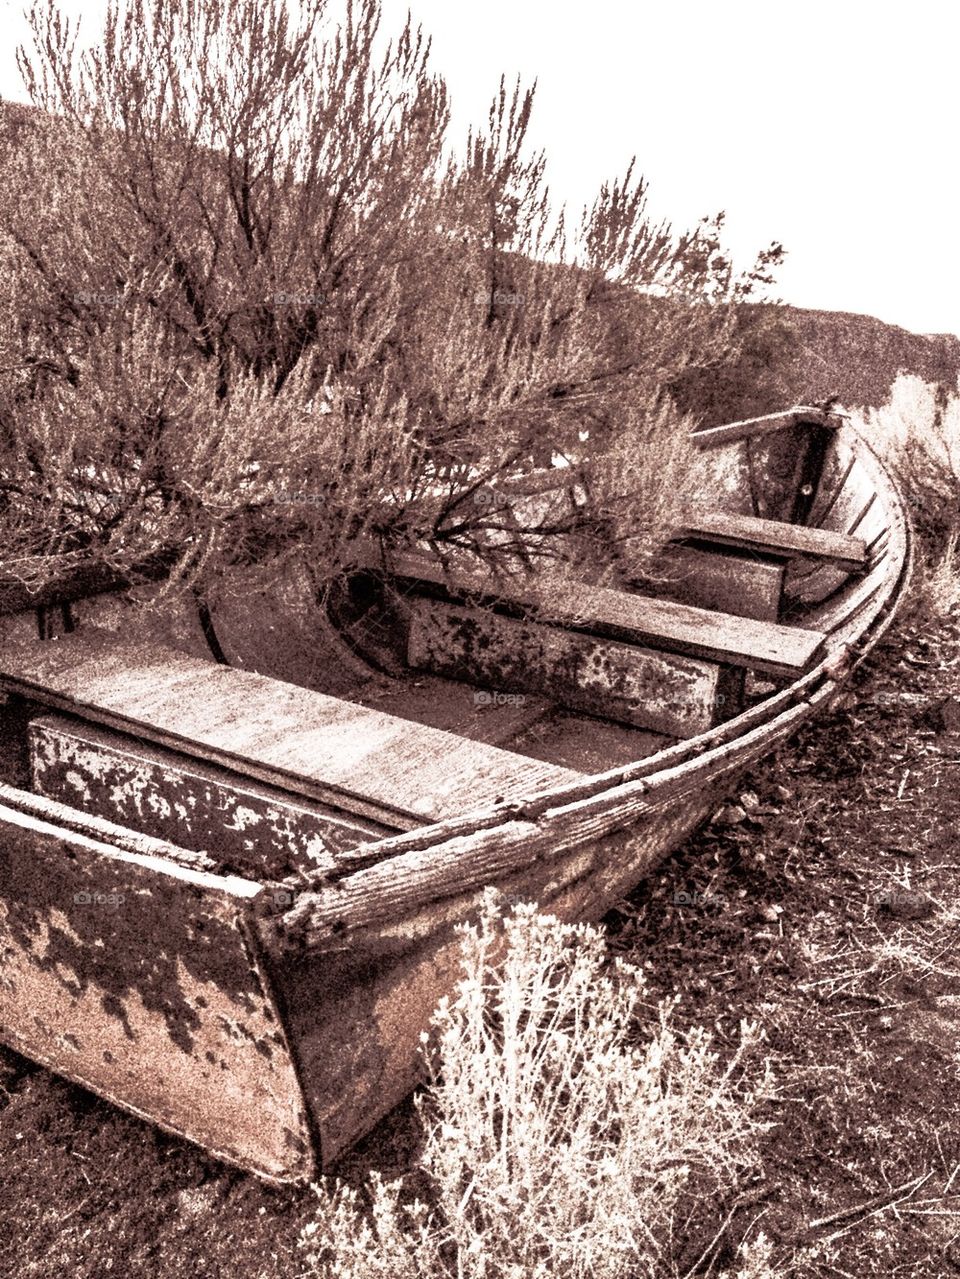 Rusty row boat